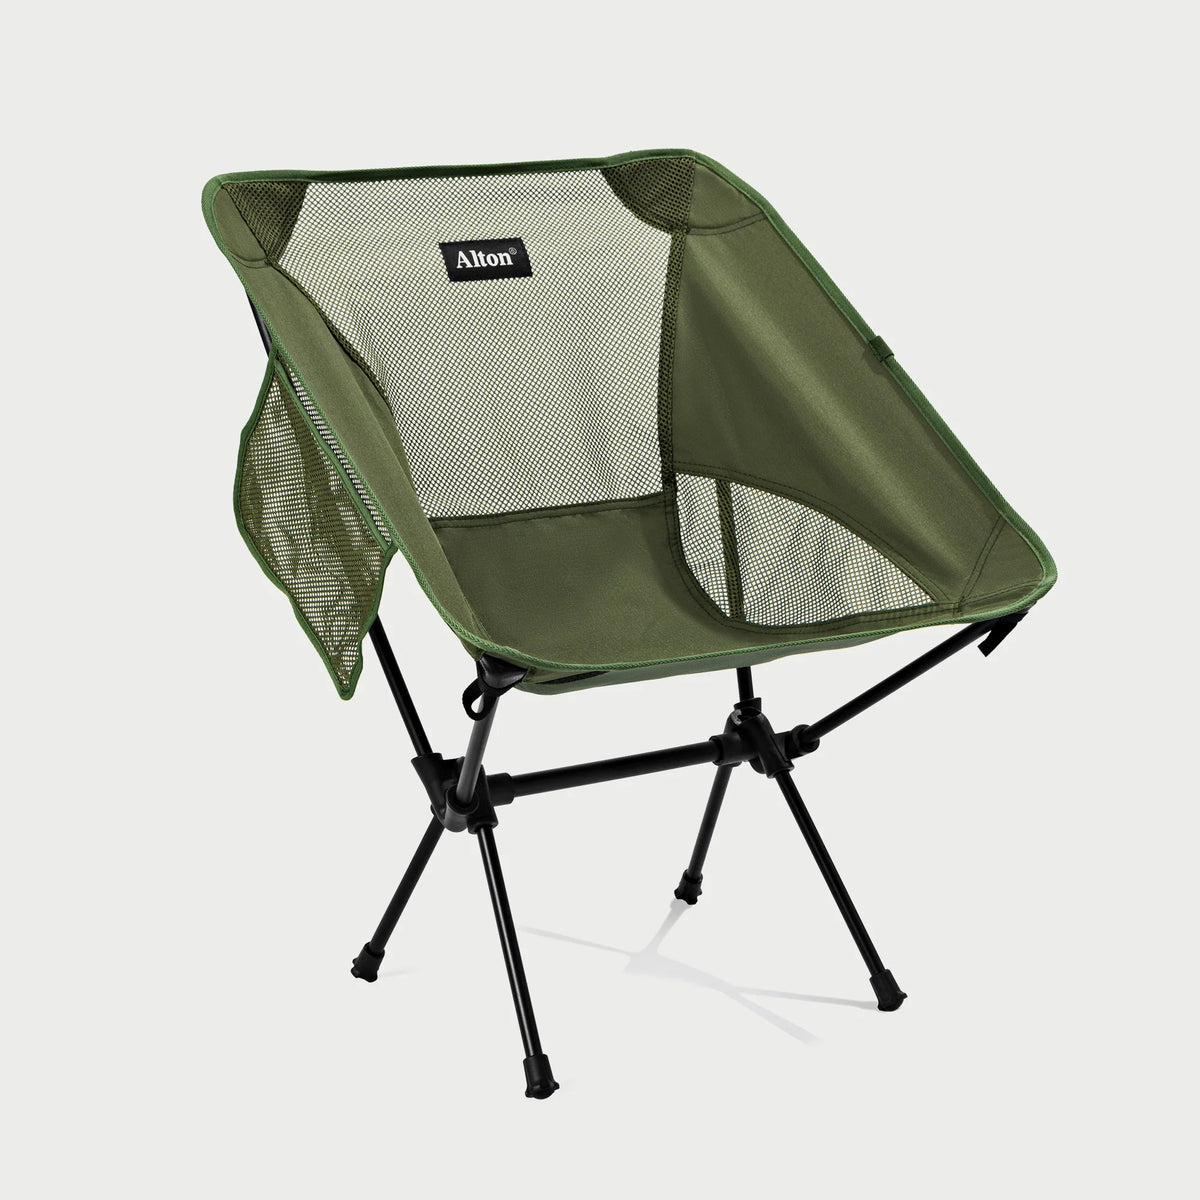 Alton Goods Ultralight Camp Chair